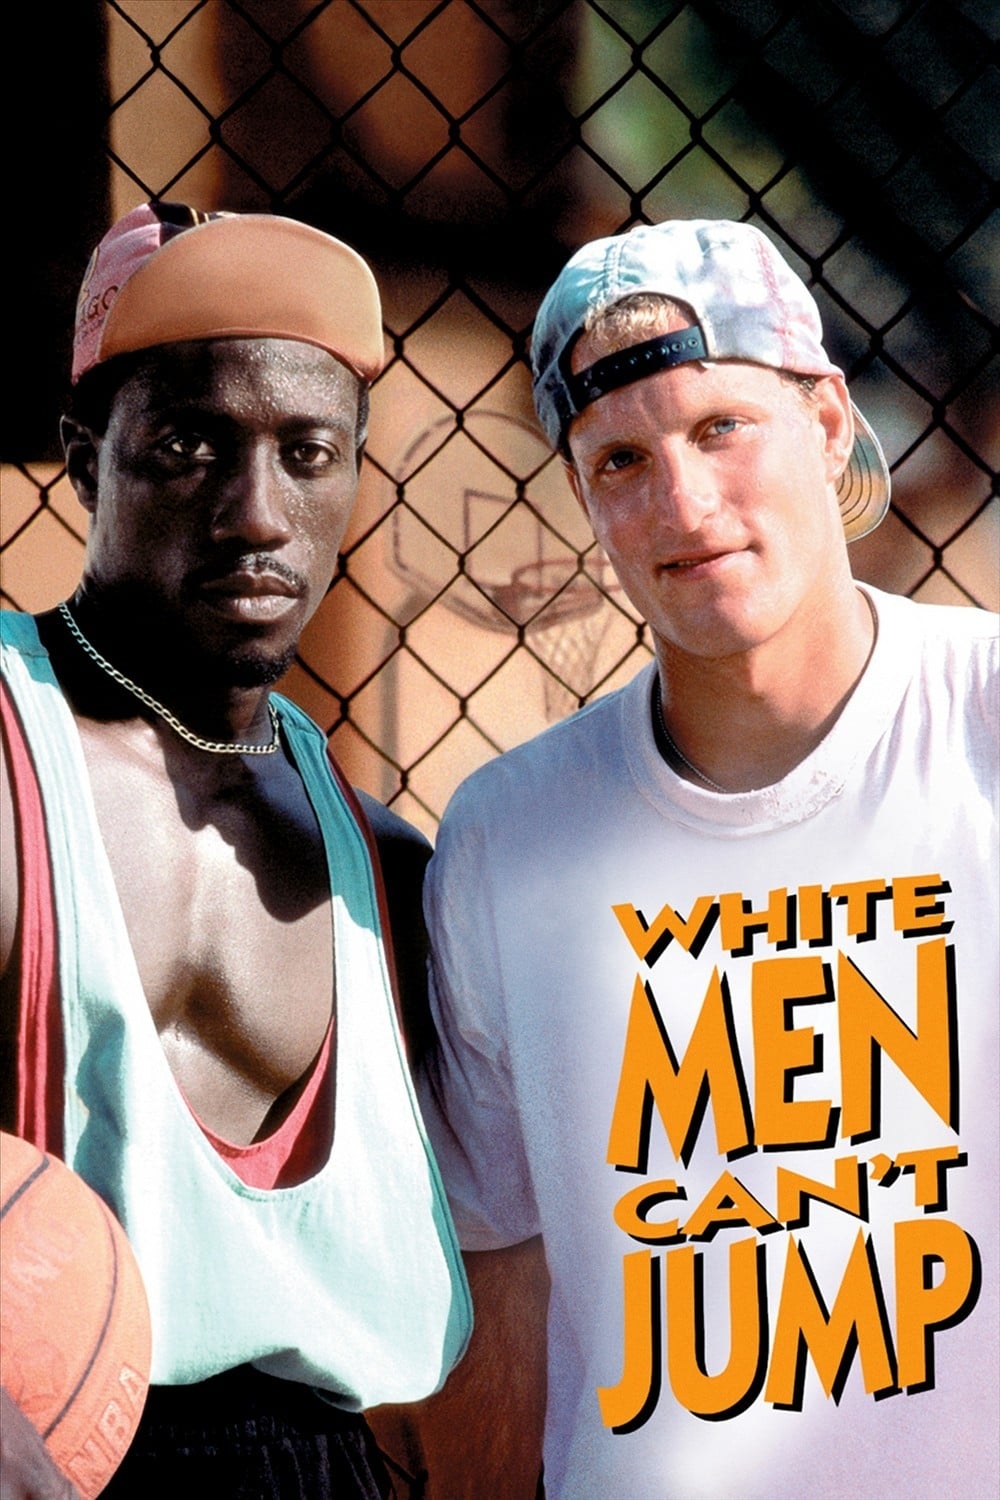 גברים לבנים אינם יכולים